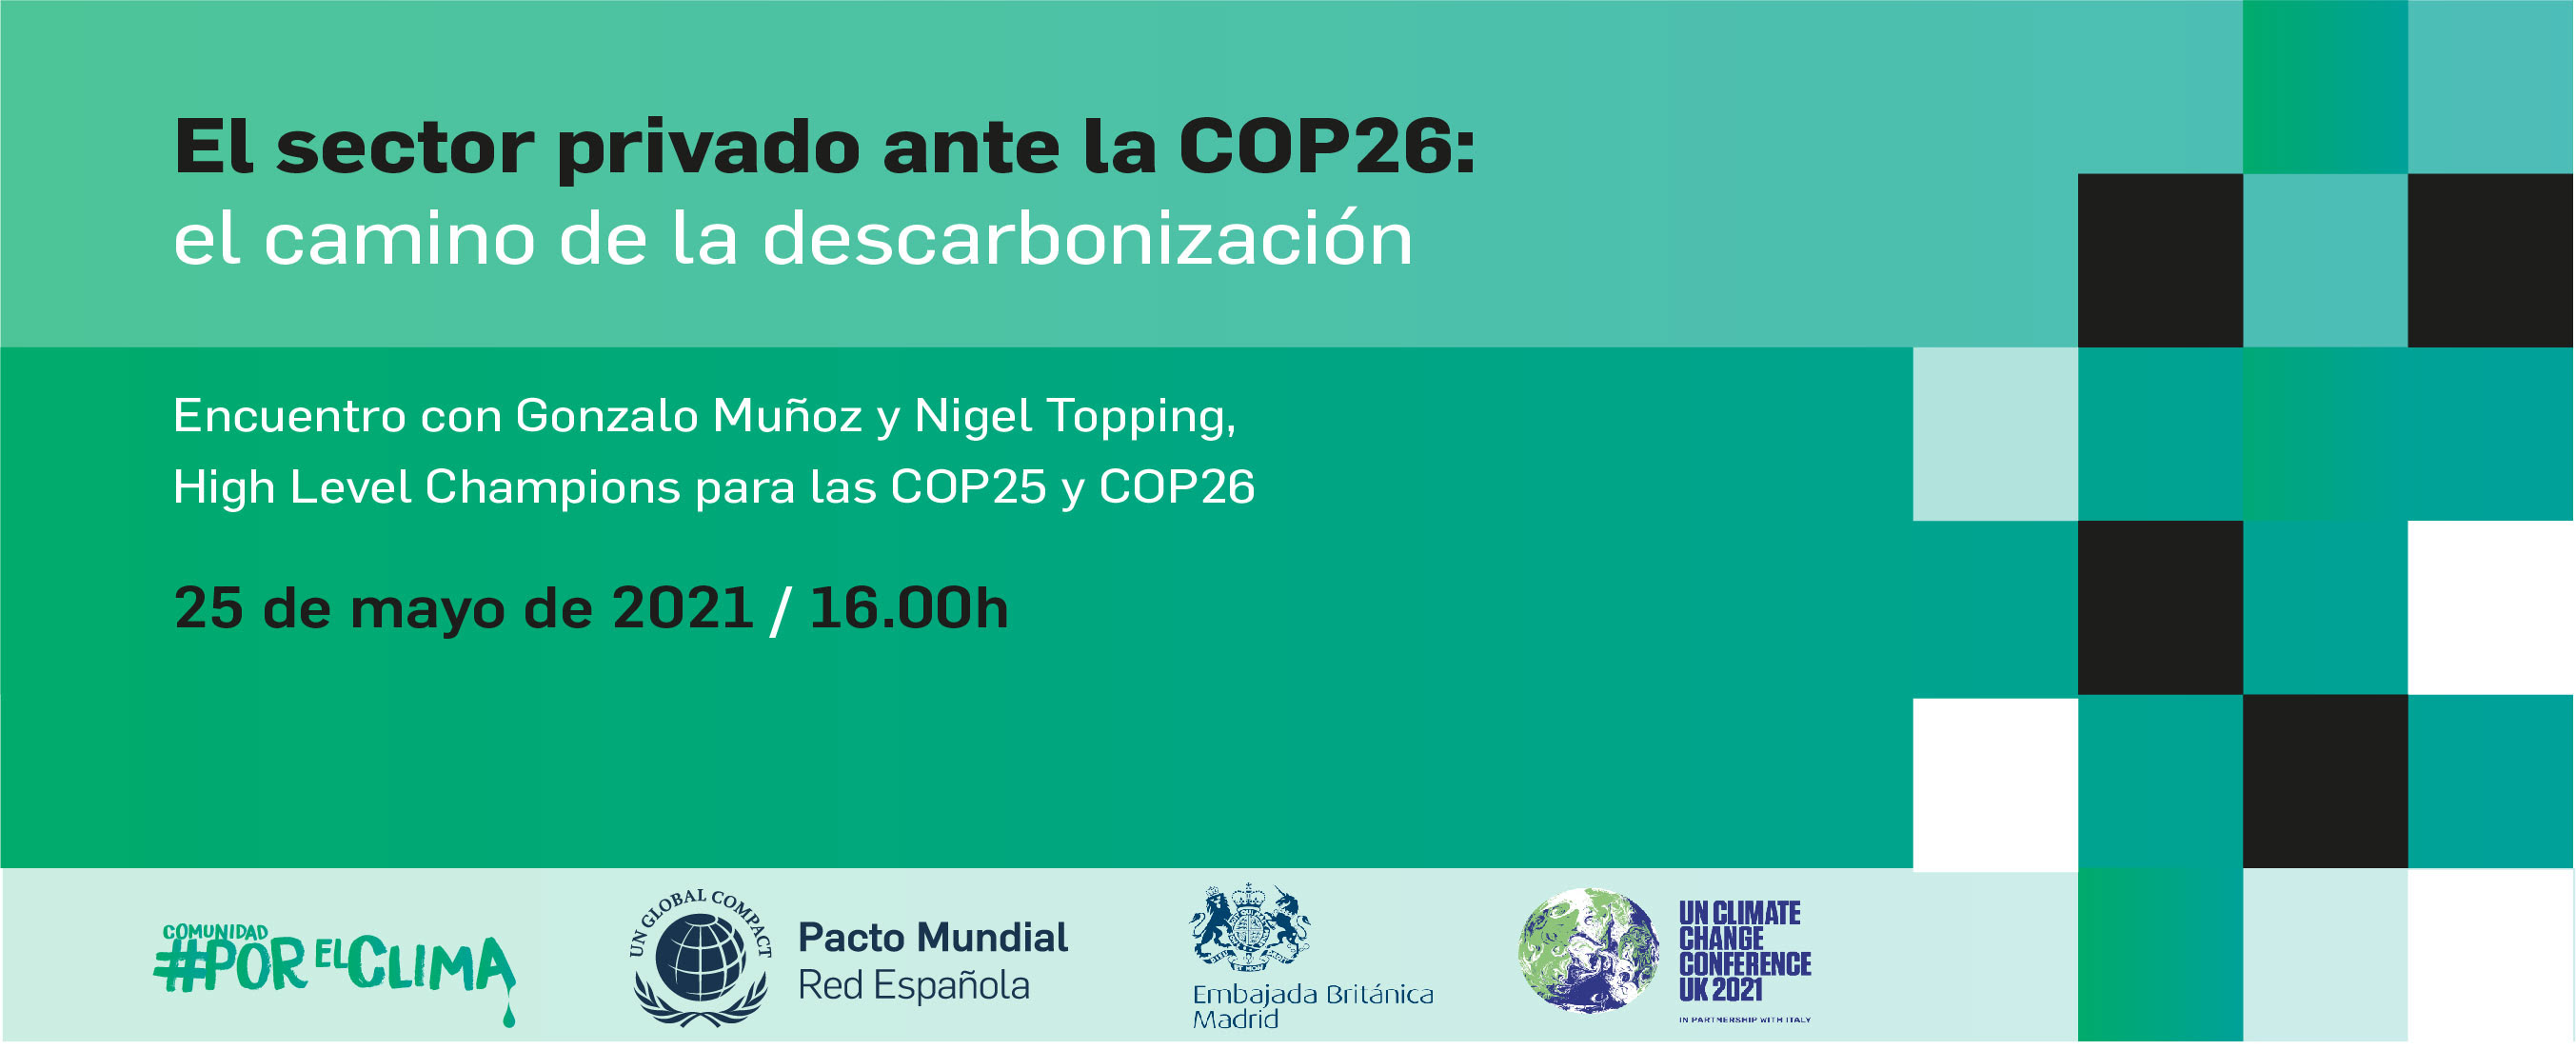 El sector privado ante la COP26, el camino de la descarbonización